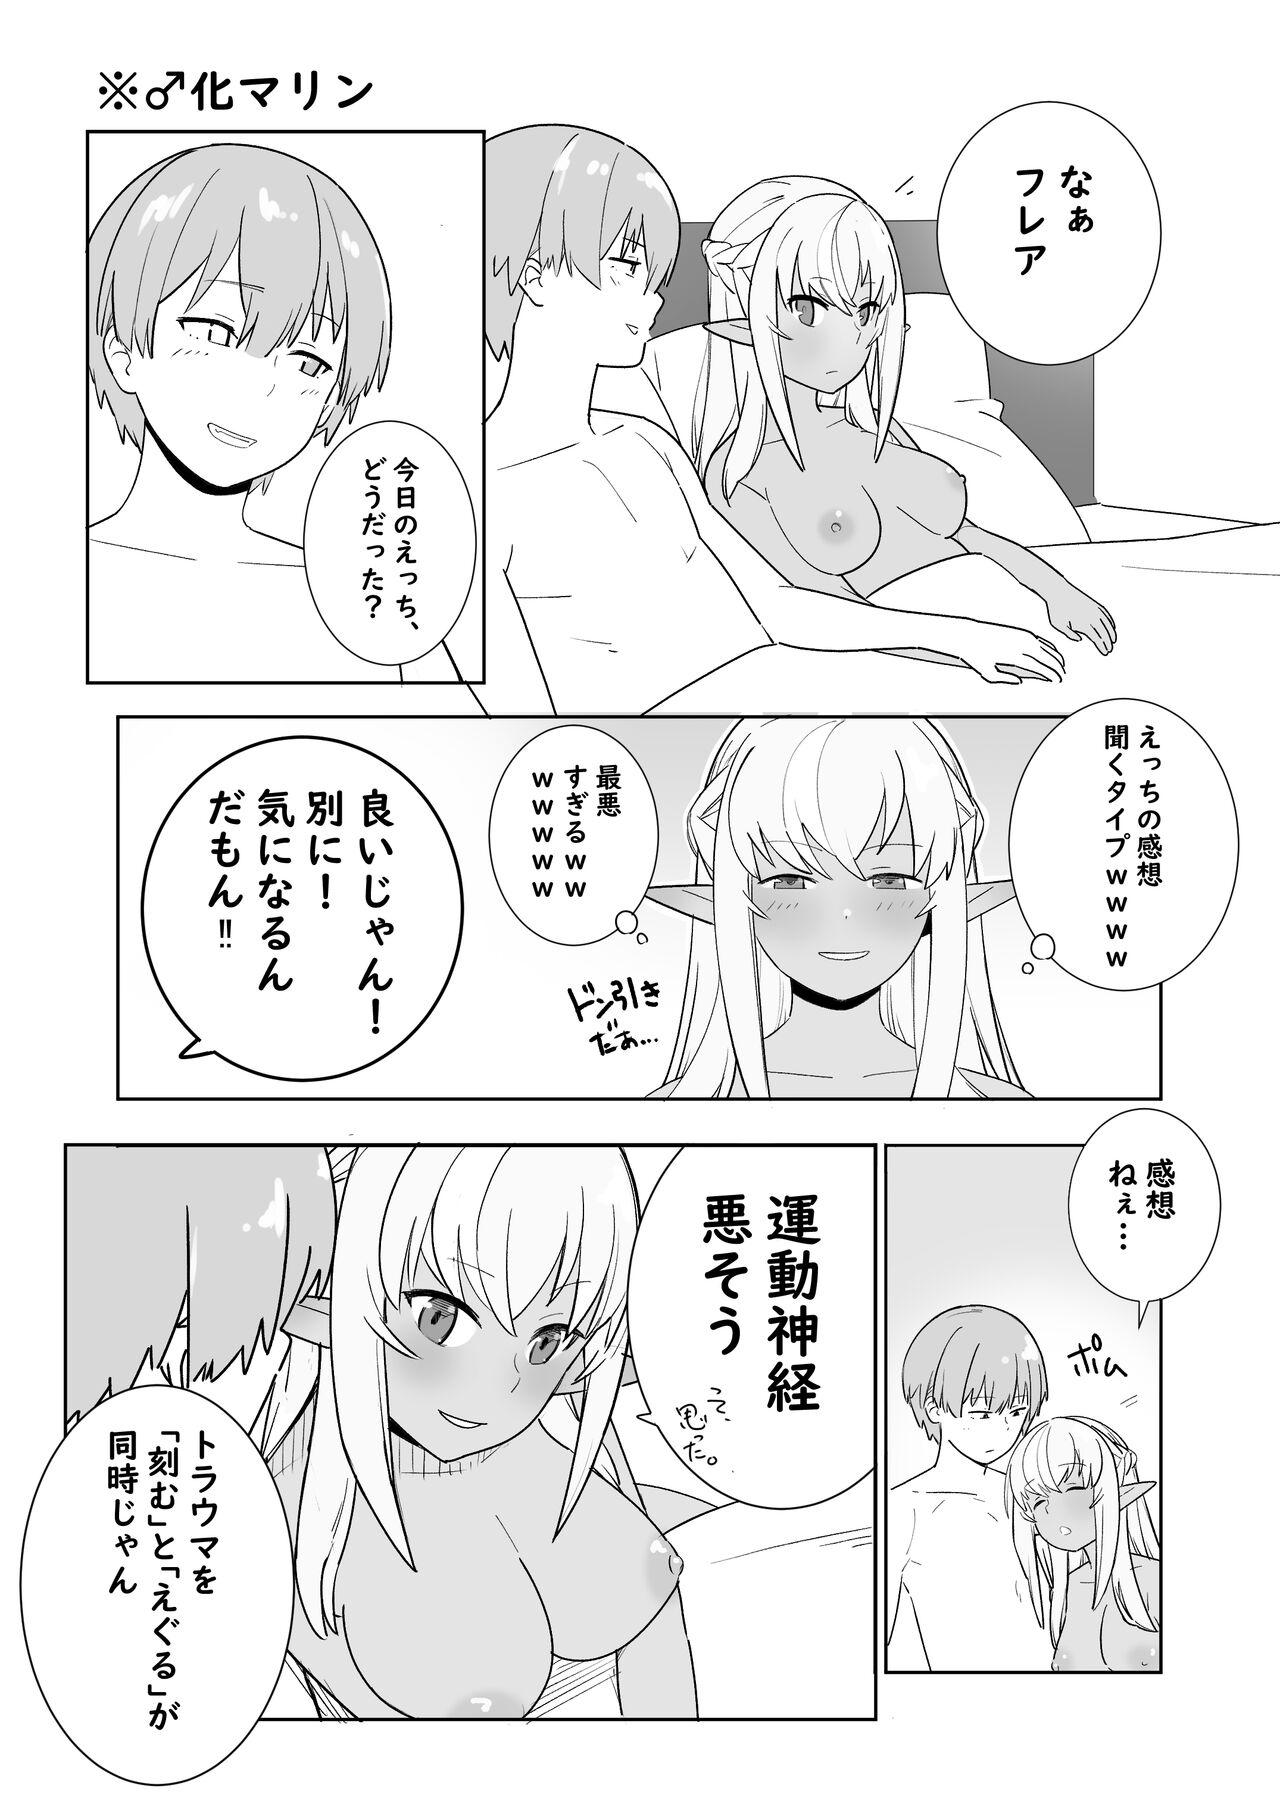 Blowing Twitter Short Manga - Hololive Rabuda - Page 8